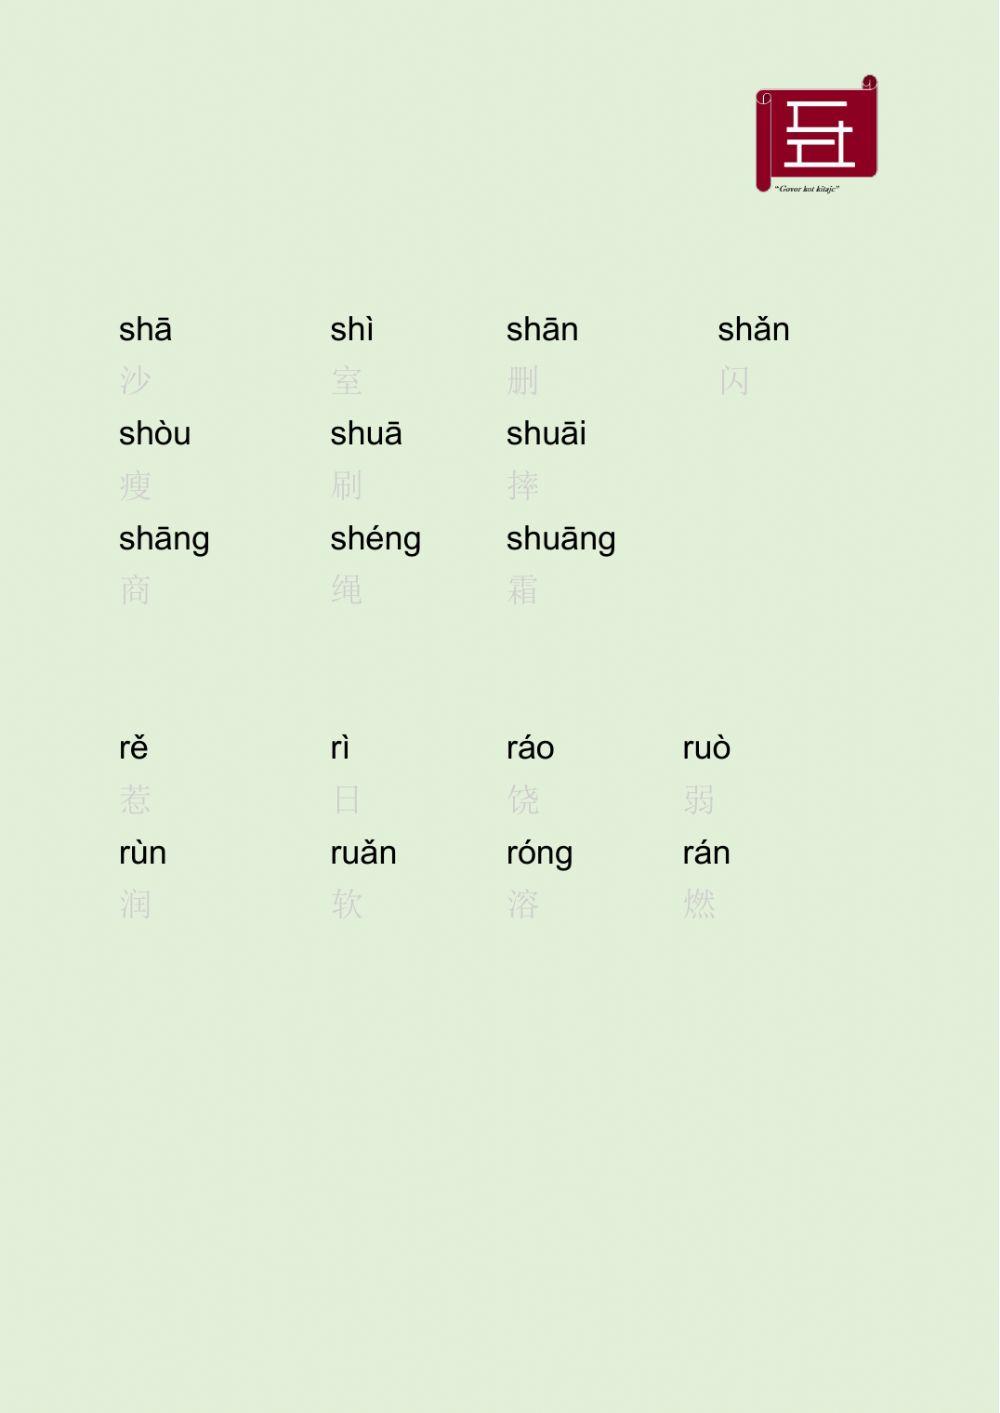 汉语 中文 zh ch sh r 发音练习 Chinese zh ch sh r Pronunciation Practice